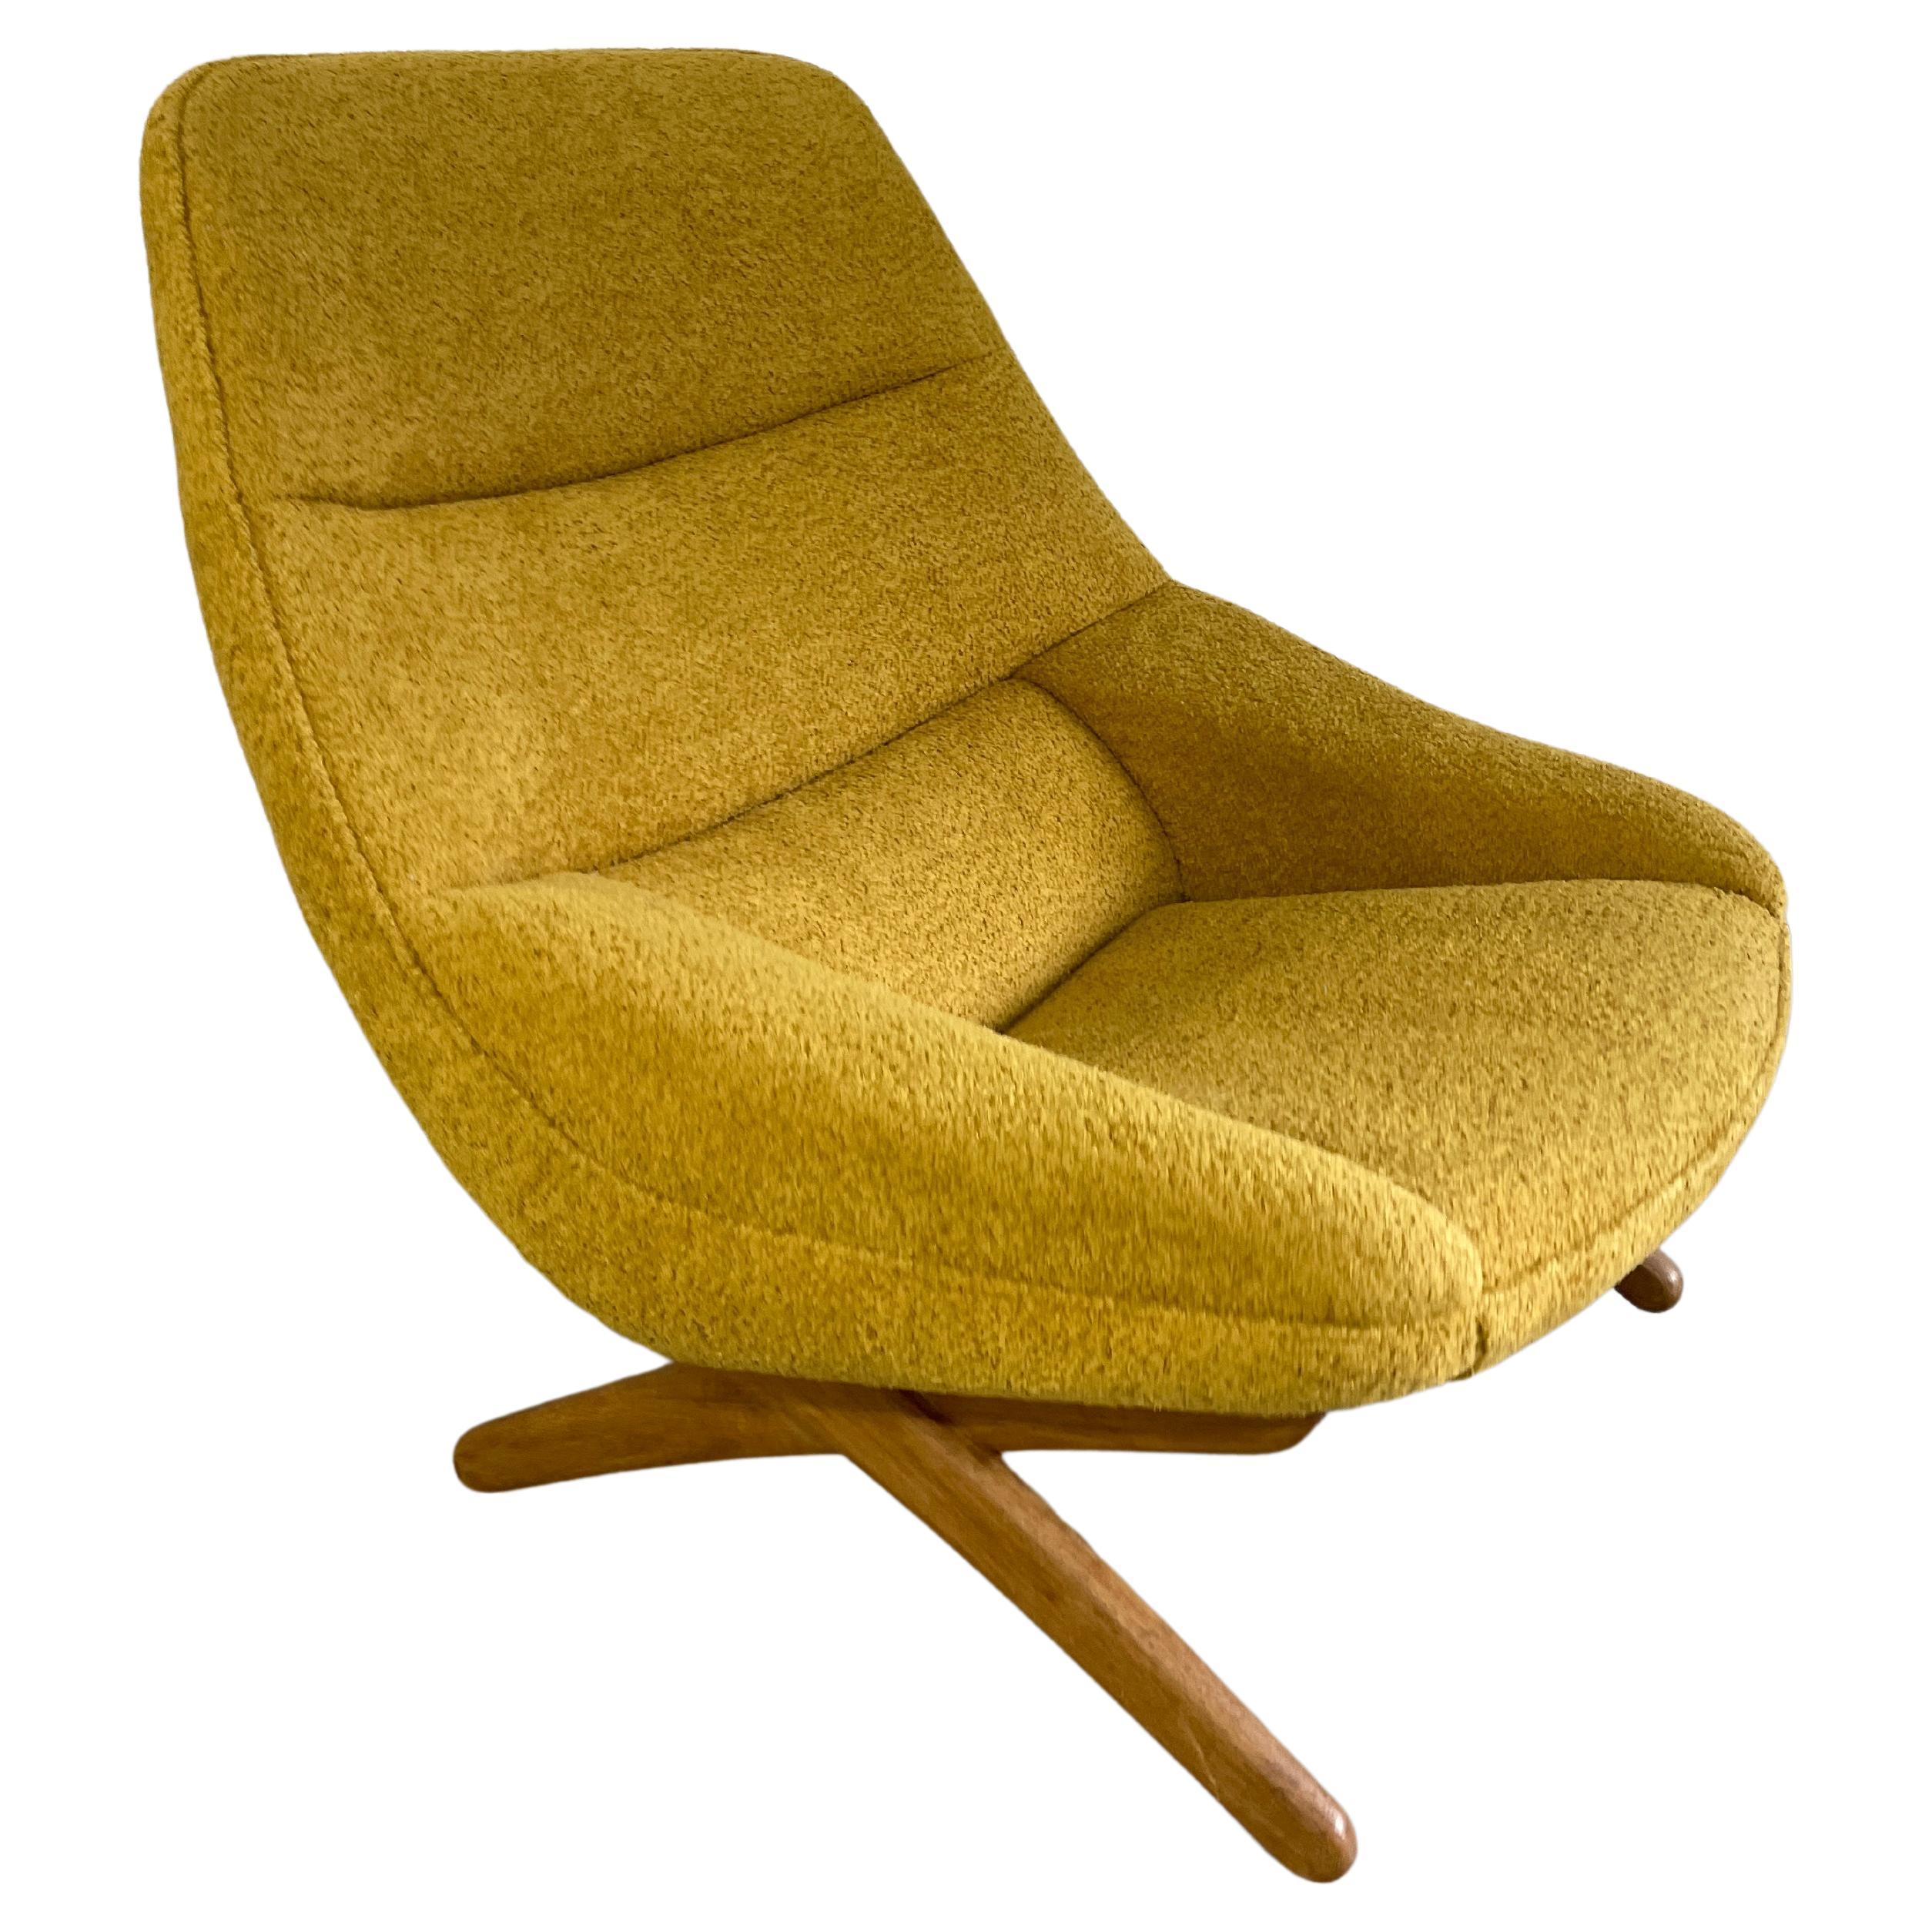 Illum Wikkelso Model Ml91 Danish Modern Lounge Chair For Sale